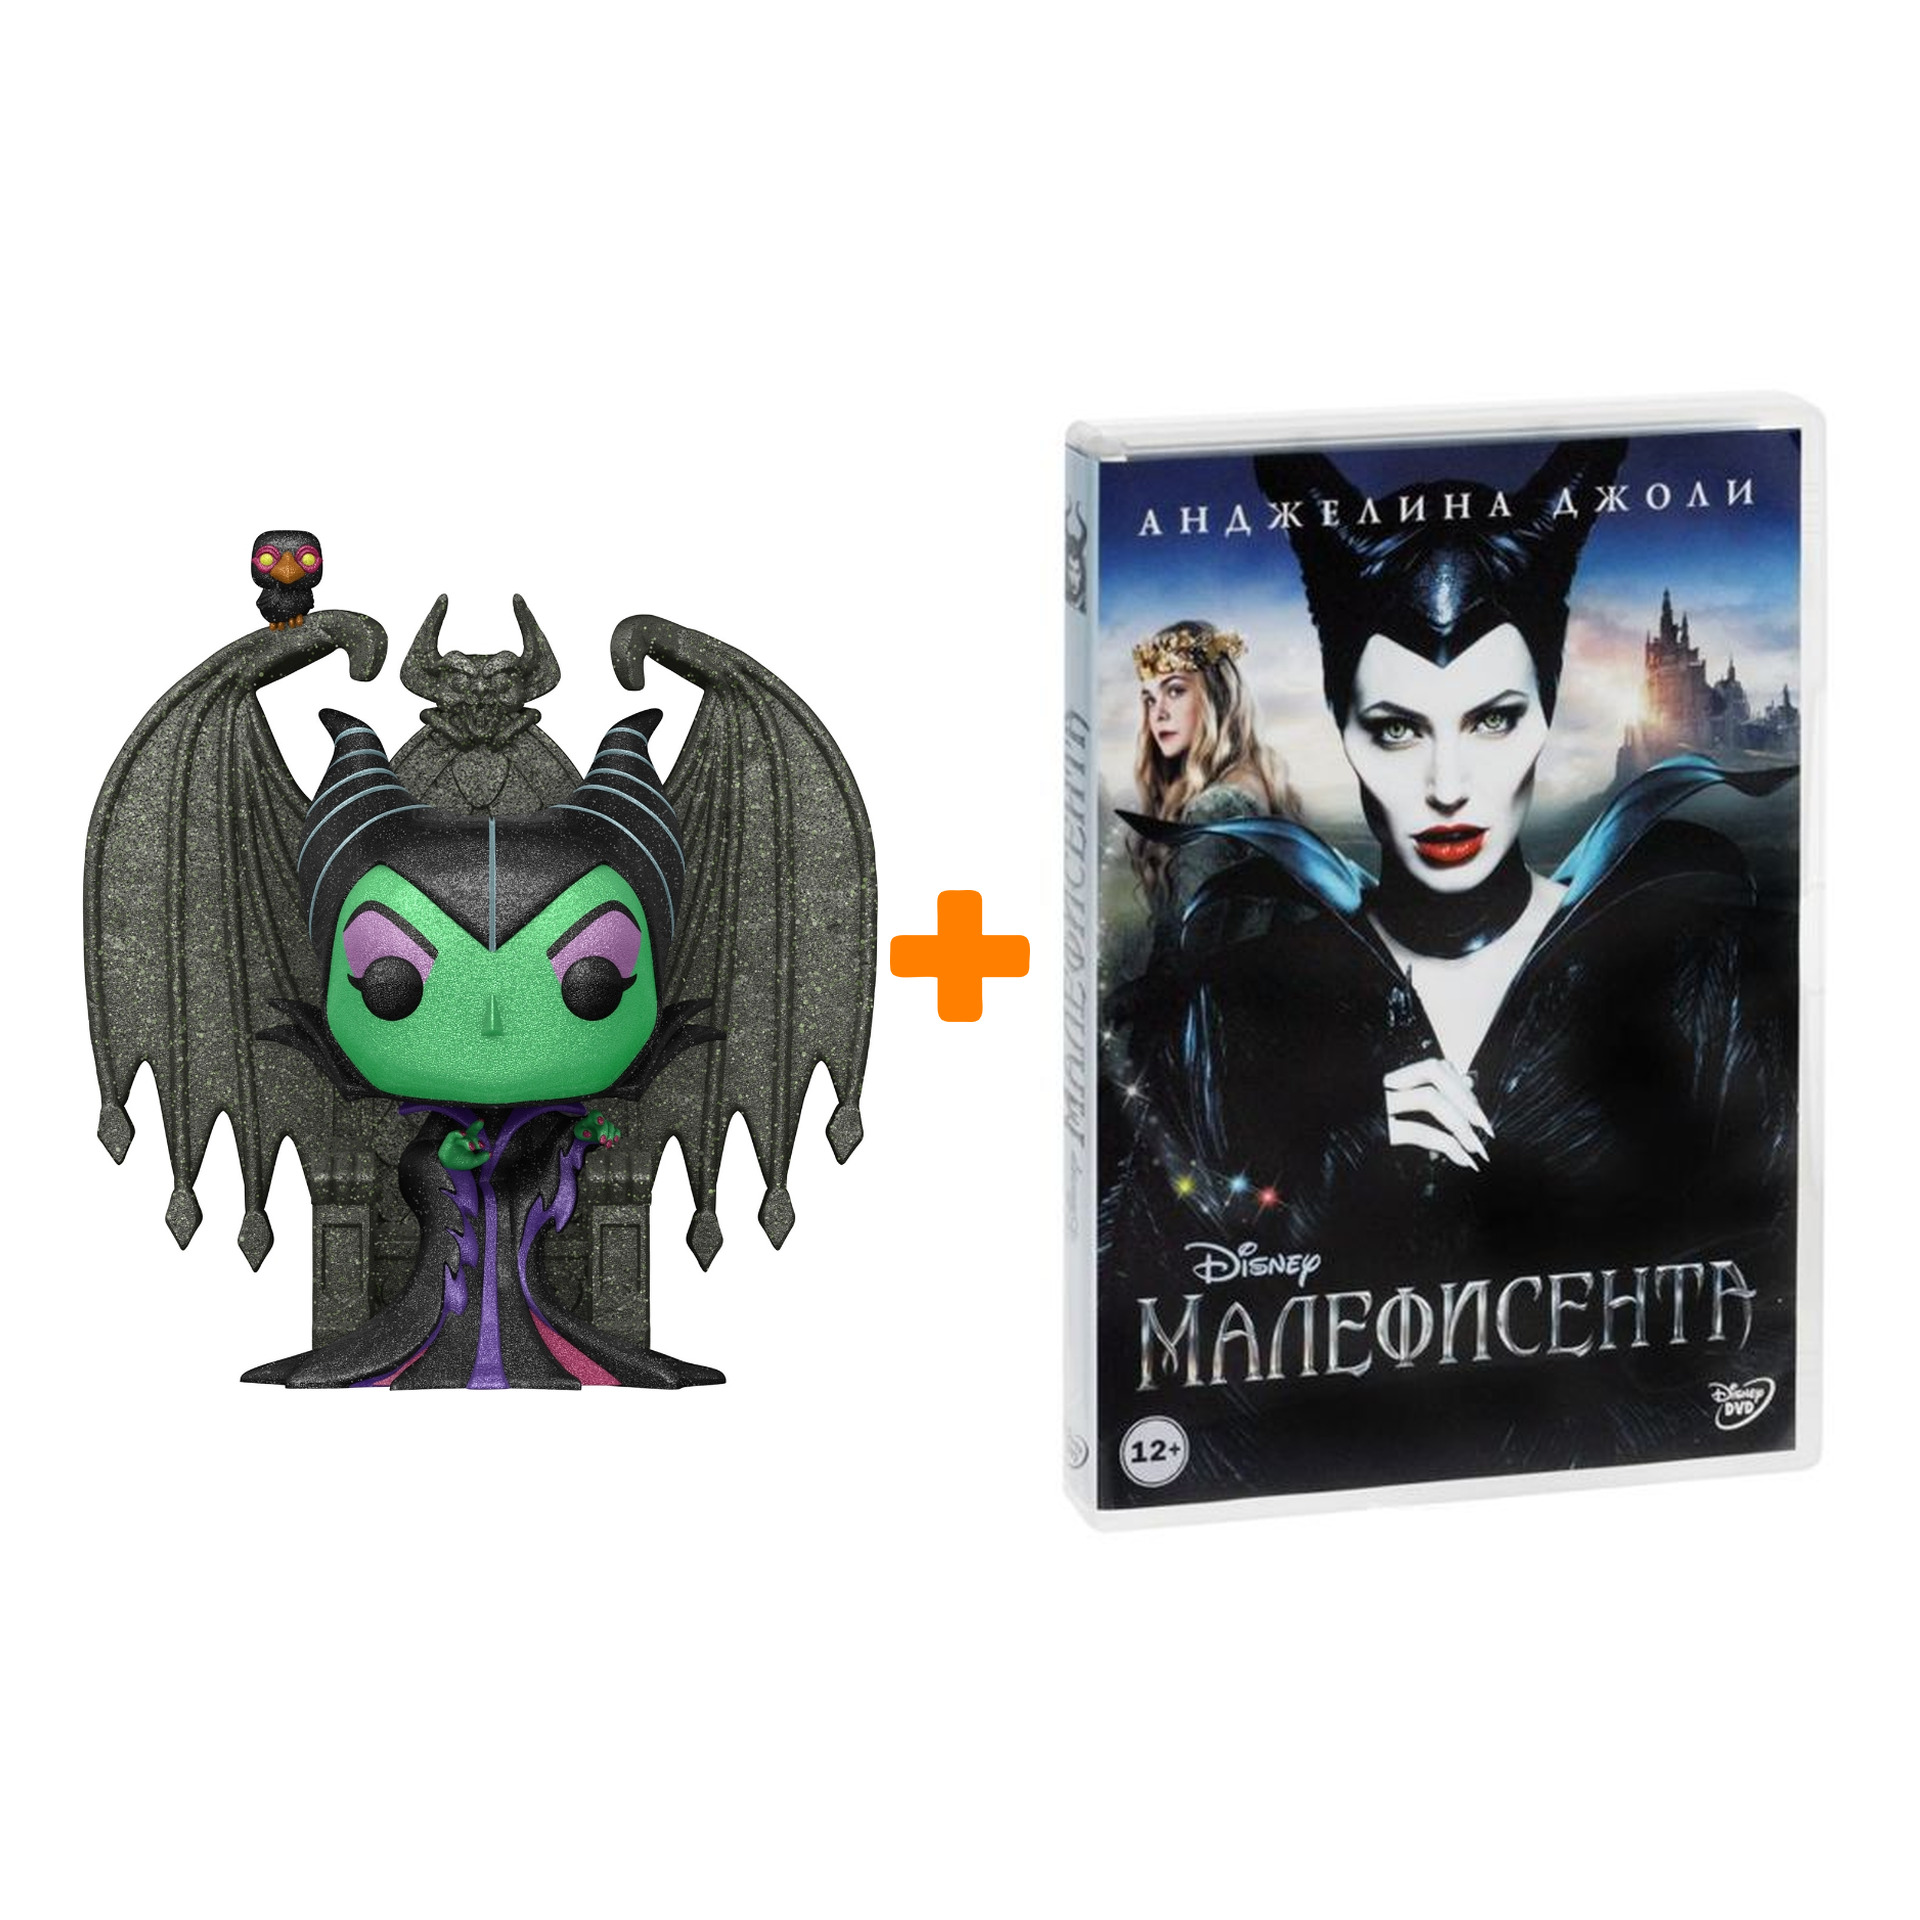 цена Набор фигурка Disney Villains Maleficent + Малефисента (региональное издание) (DVD)